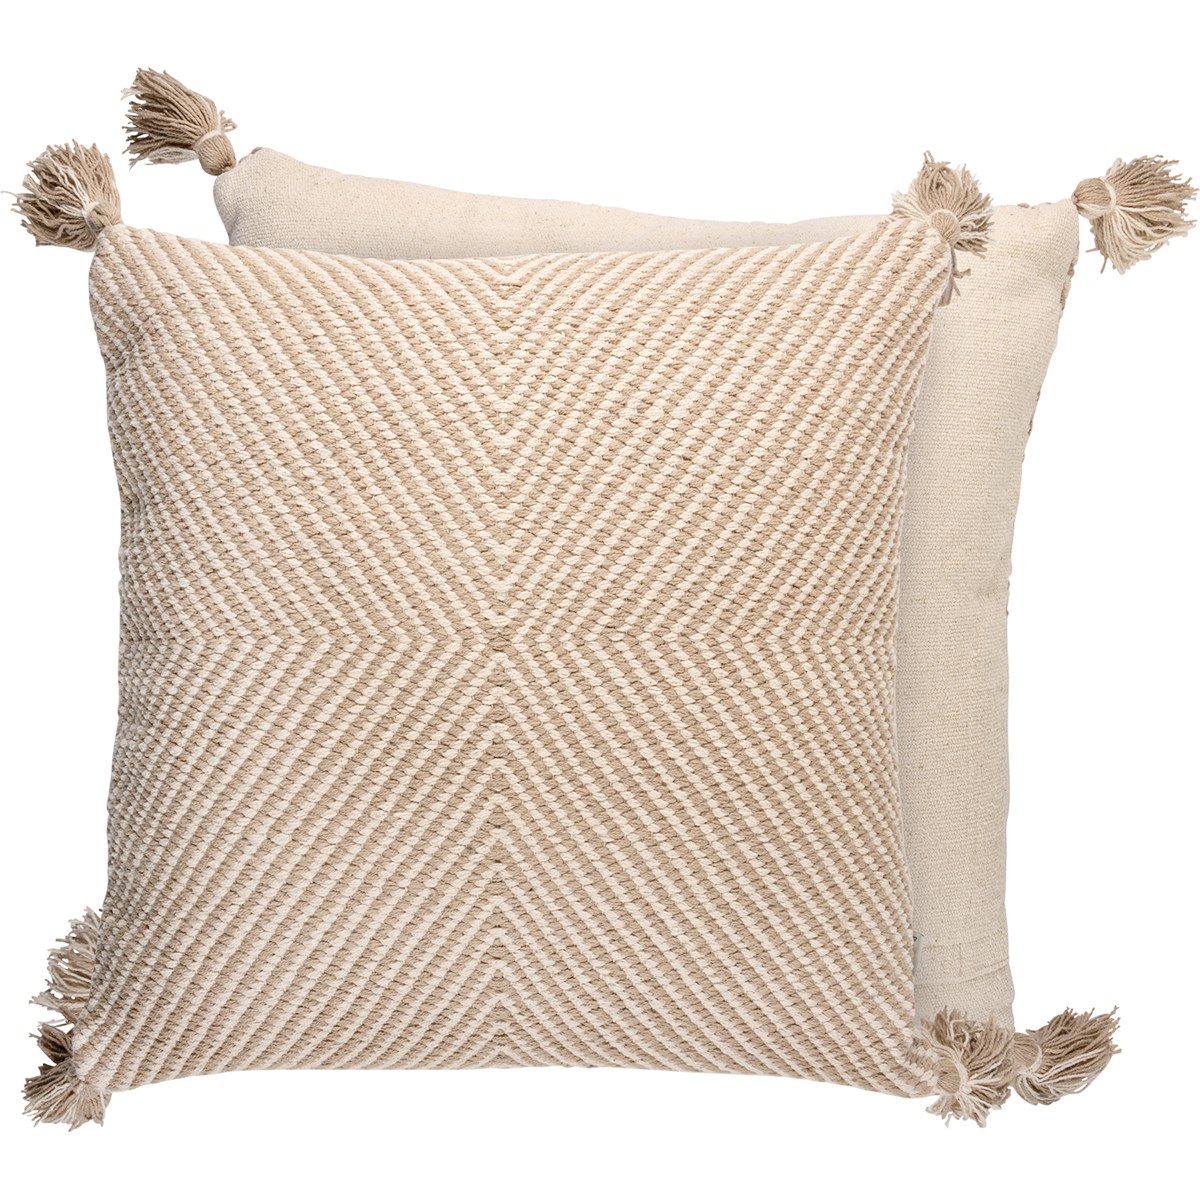 Tan Geo Pillow - Cotton, Zipper